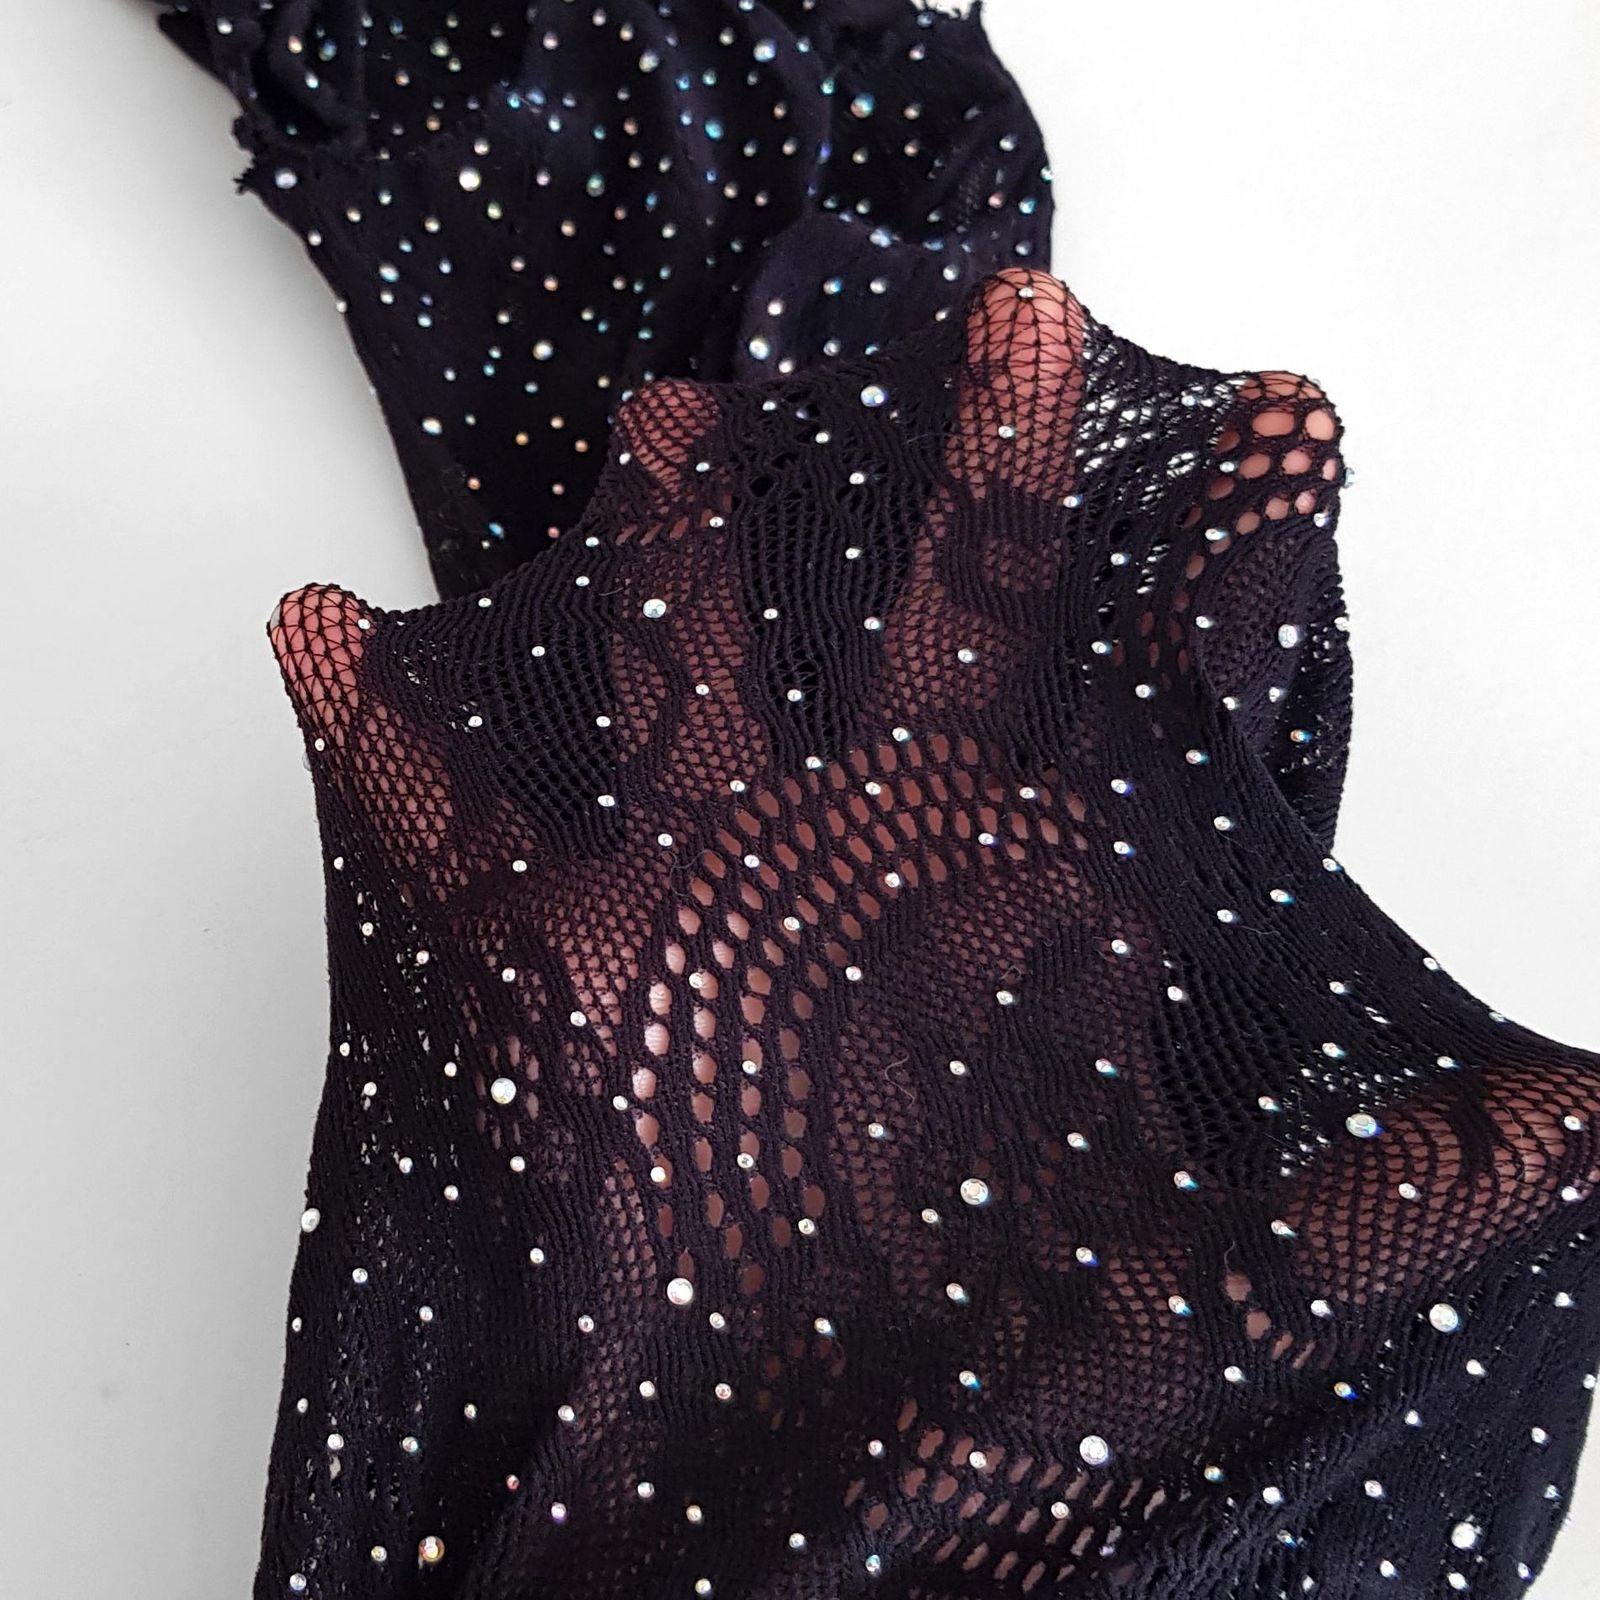 لباس خواب زنانه ماییلدا مدل نگین دار فانتزی کد 4860-7185 رنگ مشکی -  - 5